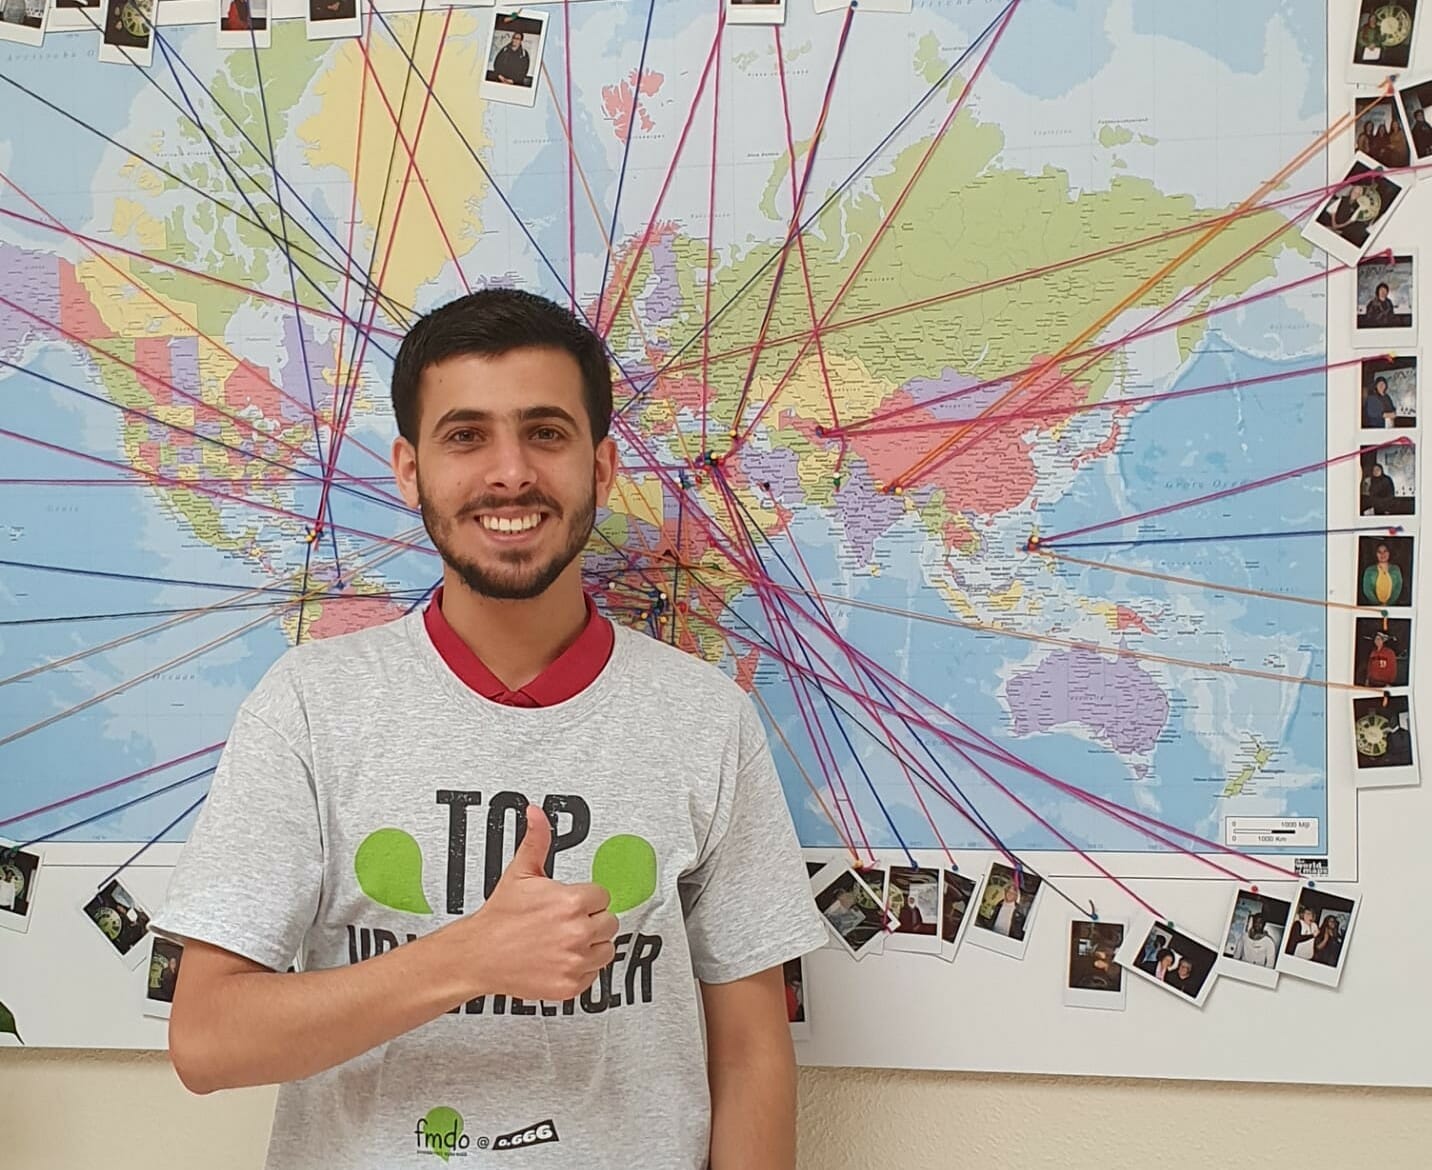 Maak kennis met onze top-vrijwilliger Mohammed!